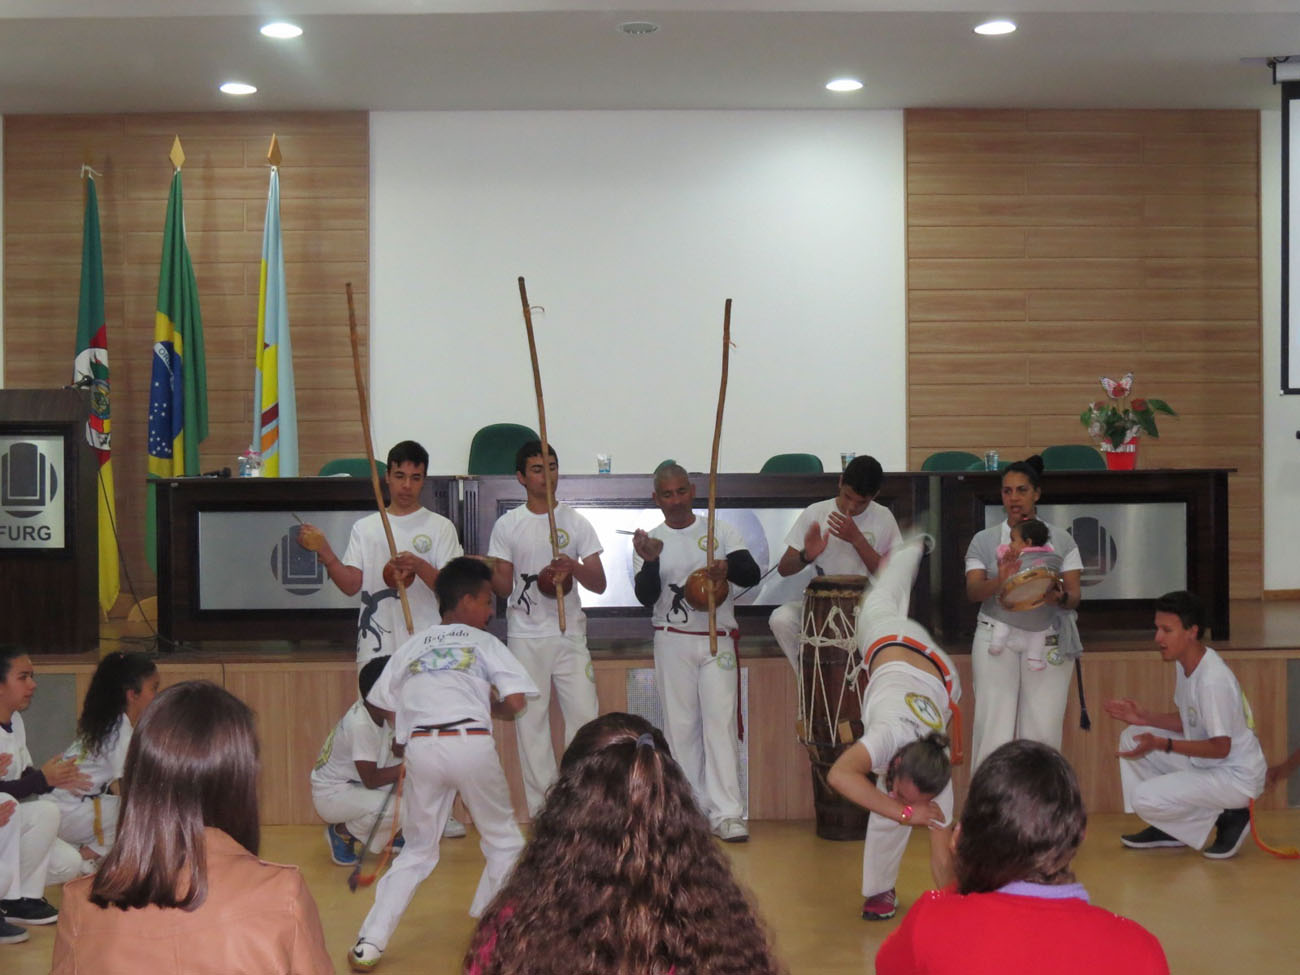 Grupo de Capoeira Berimbau de Ouro